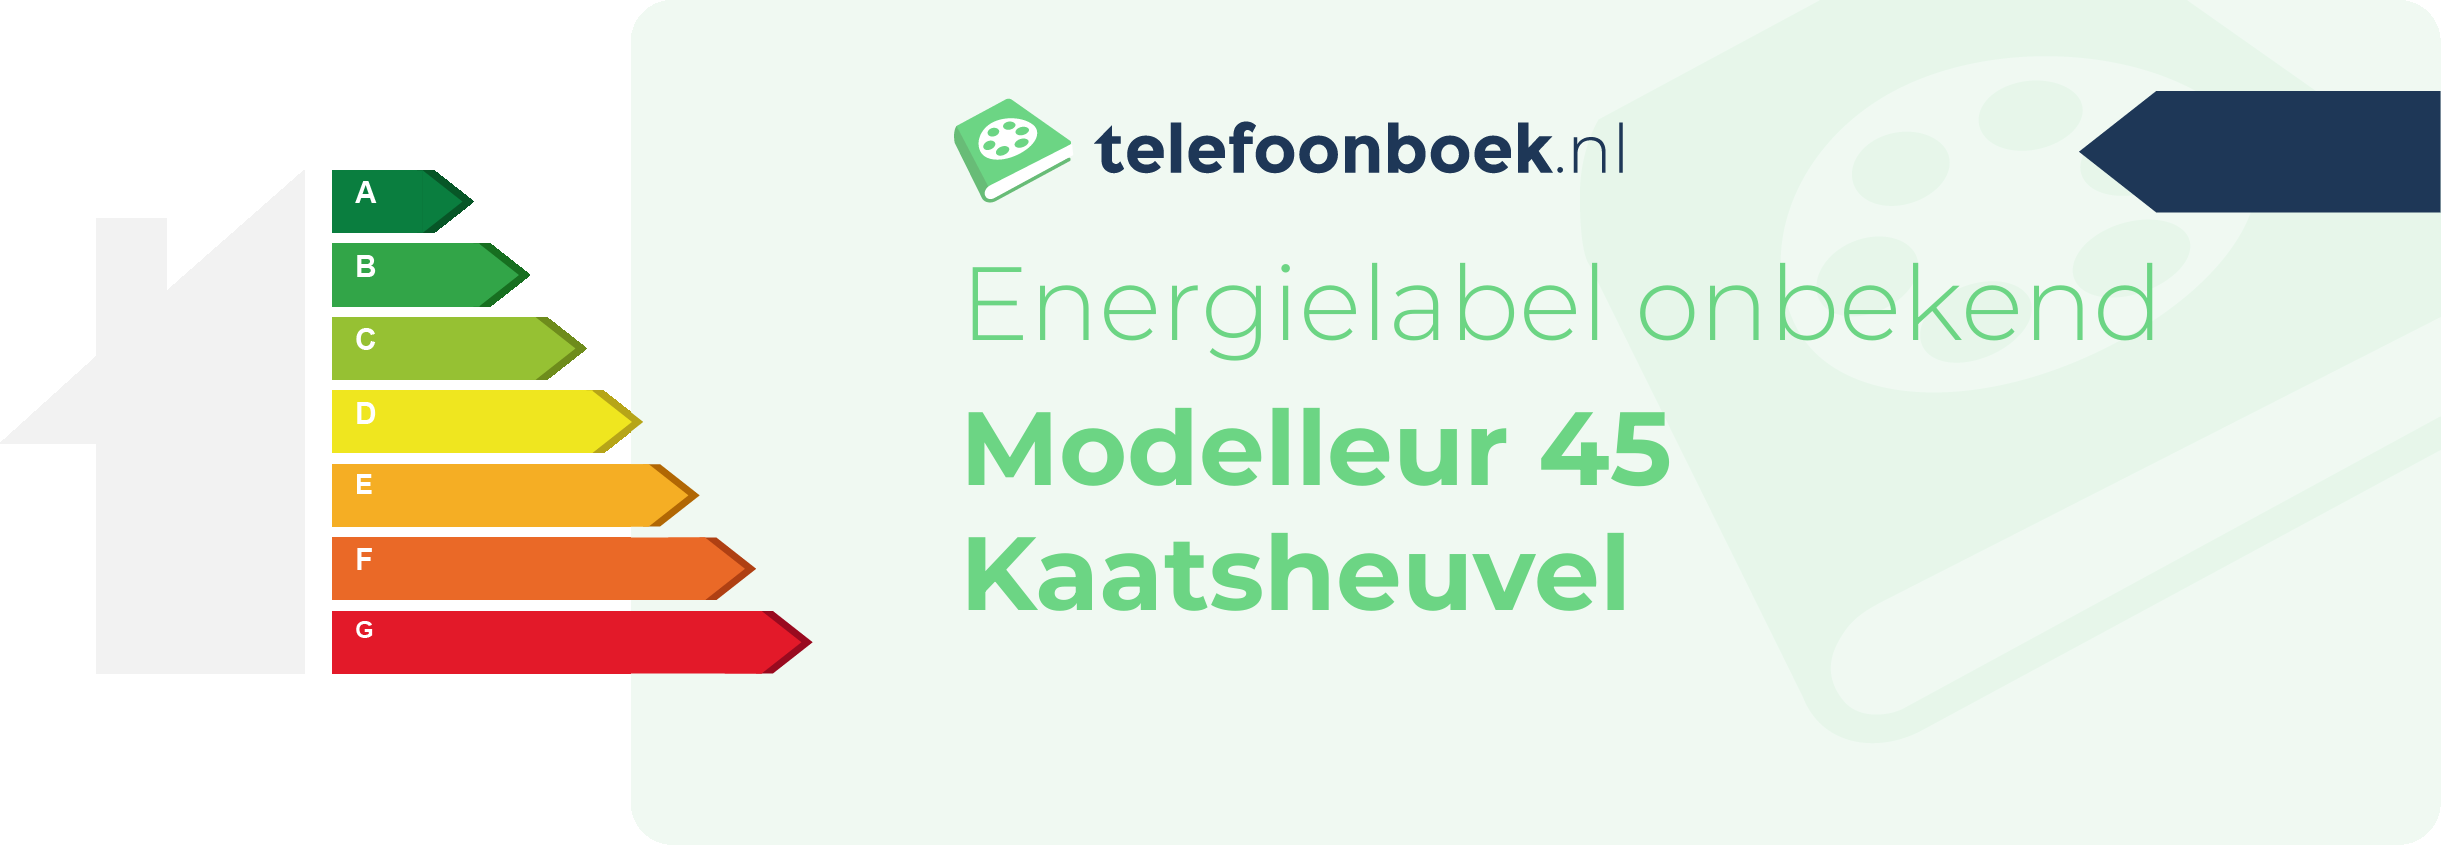 Energielabel Modelleur 45 Kaatsheuvel